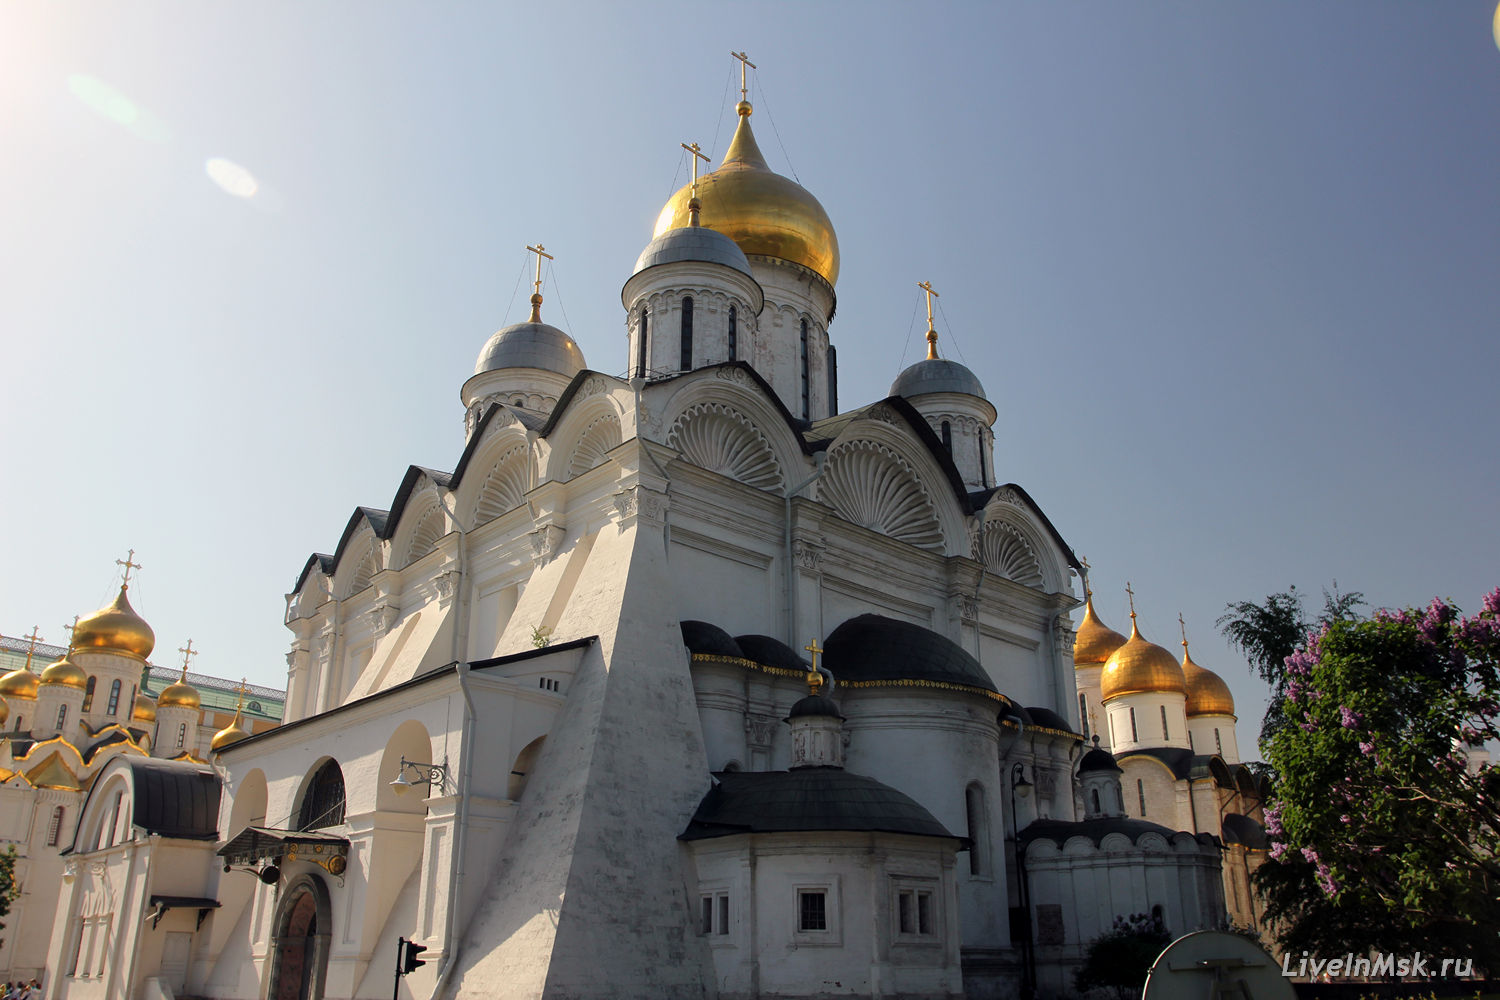 Архангельский собор Московского Кремля, фото 2015 года